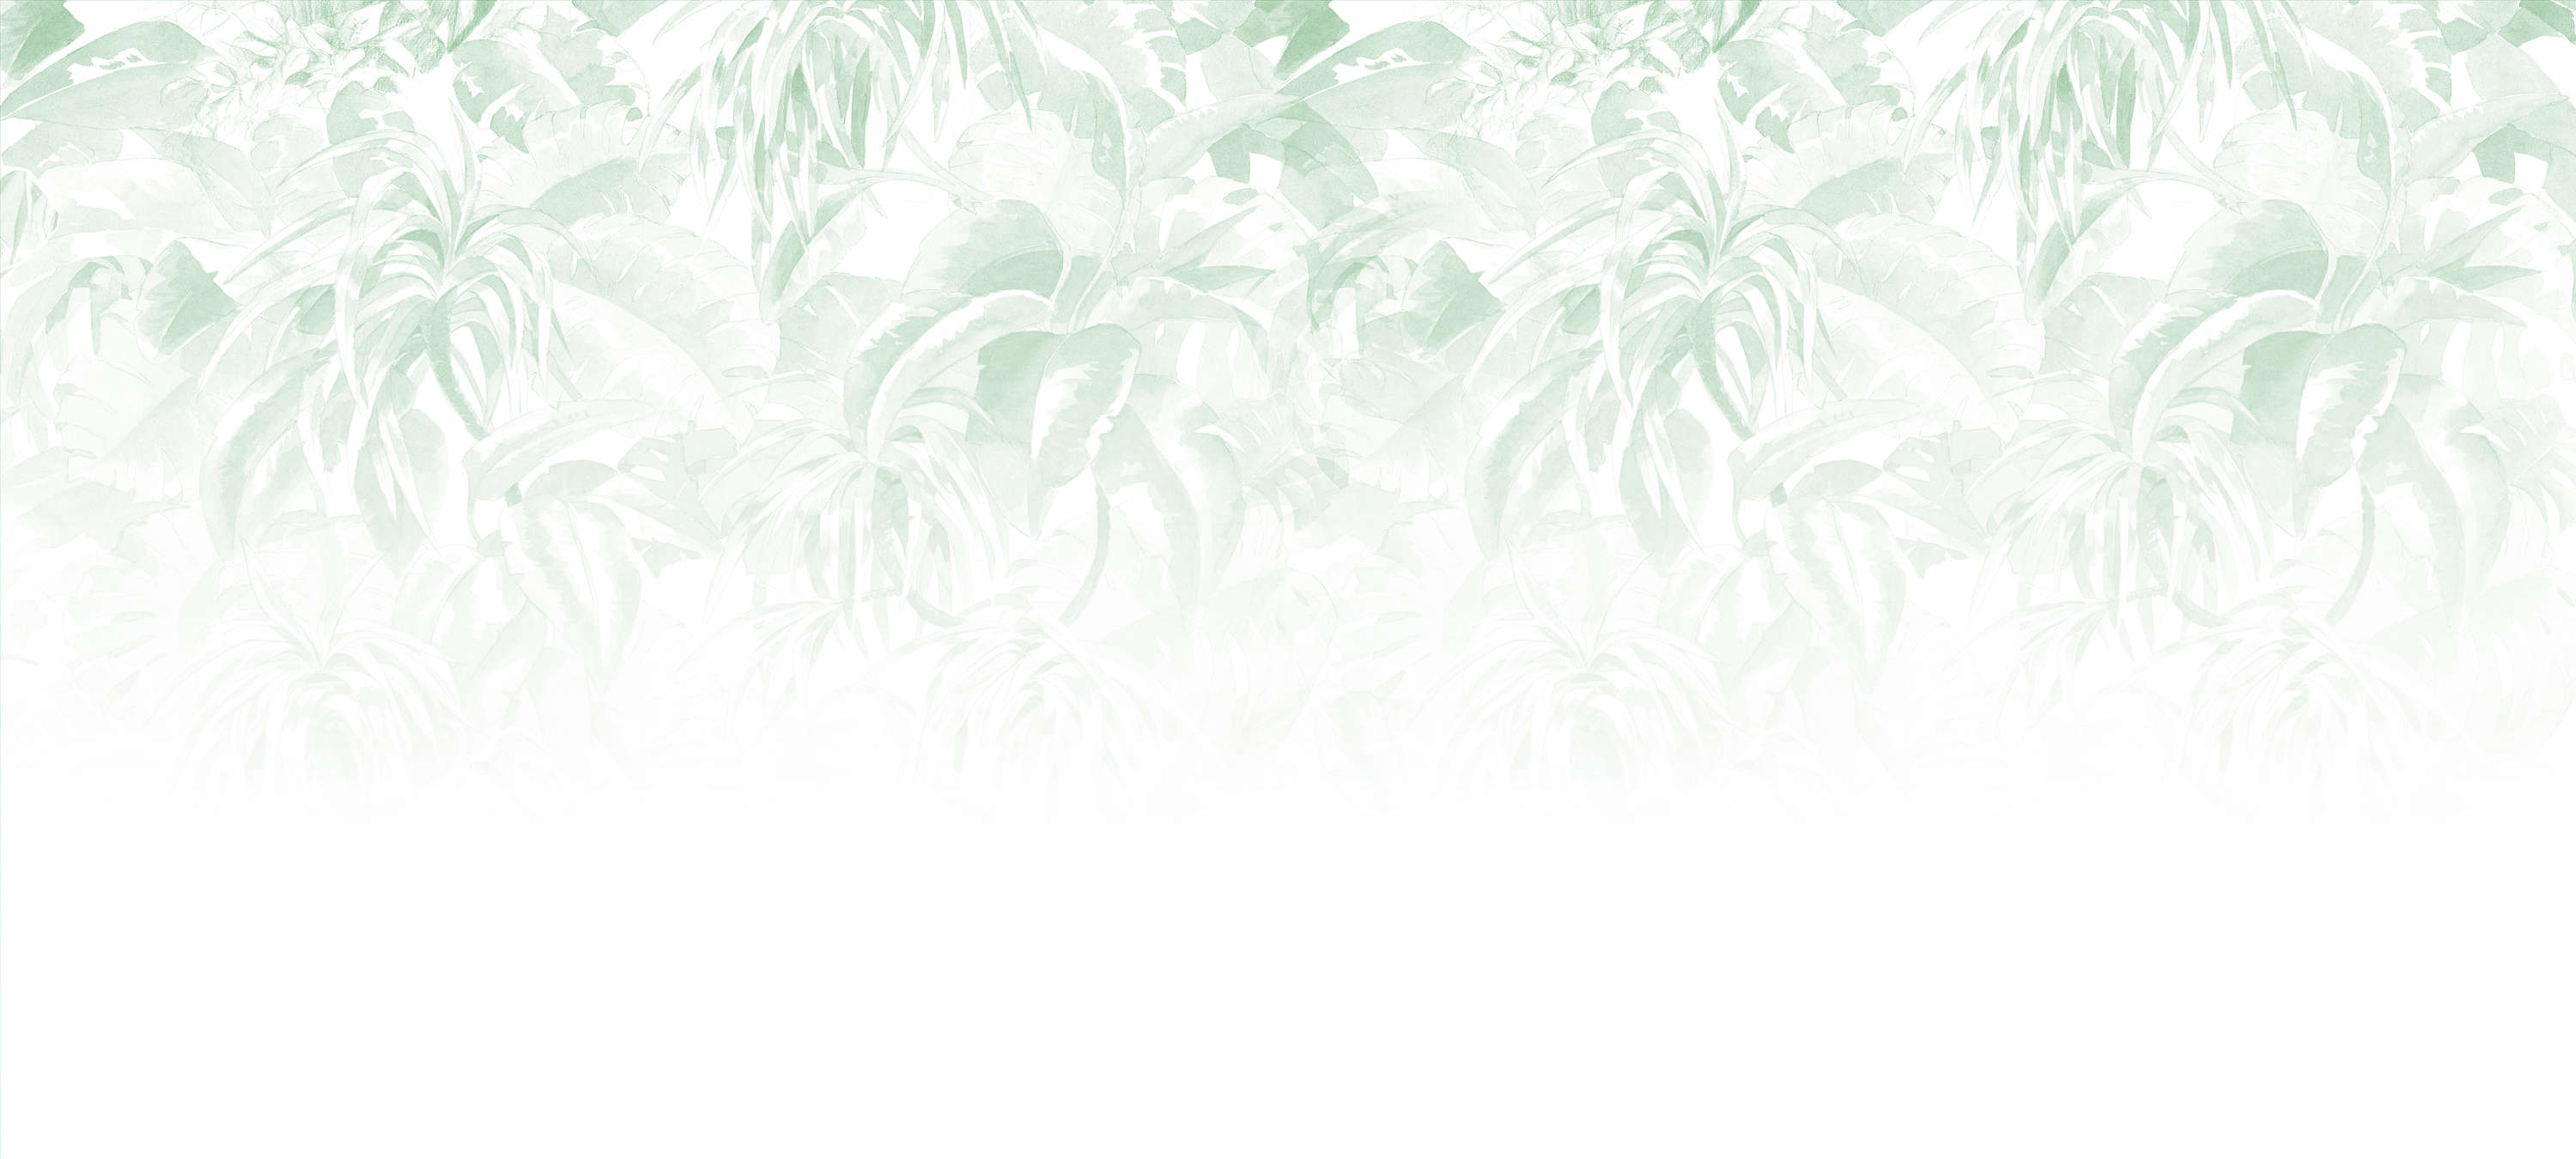             Fototapete tropische Blätter, minimalistisch & natürlich – Grün, Weiß
        